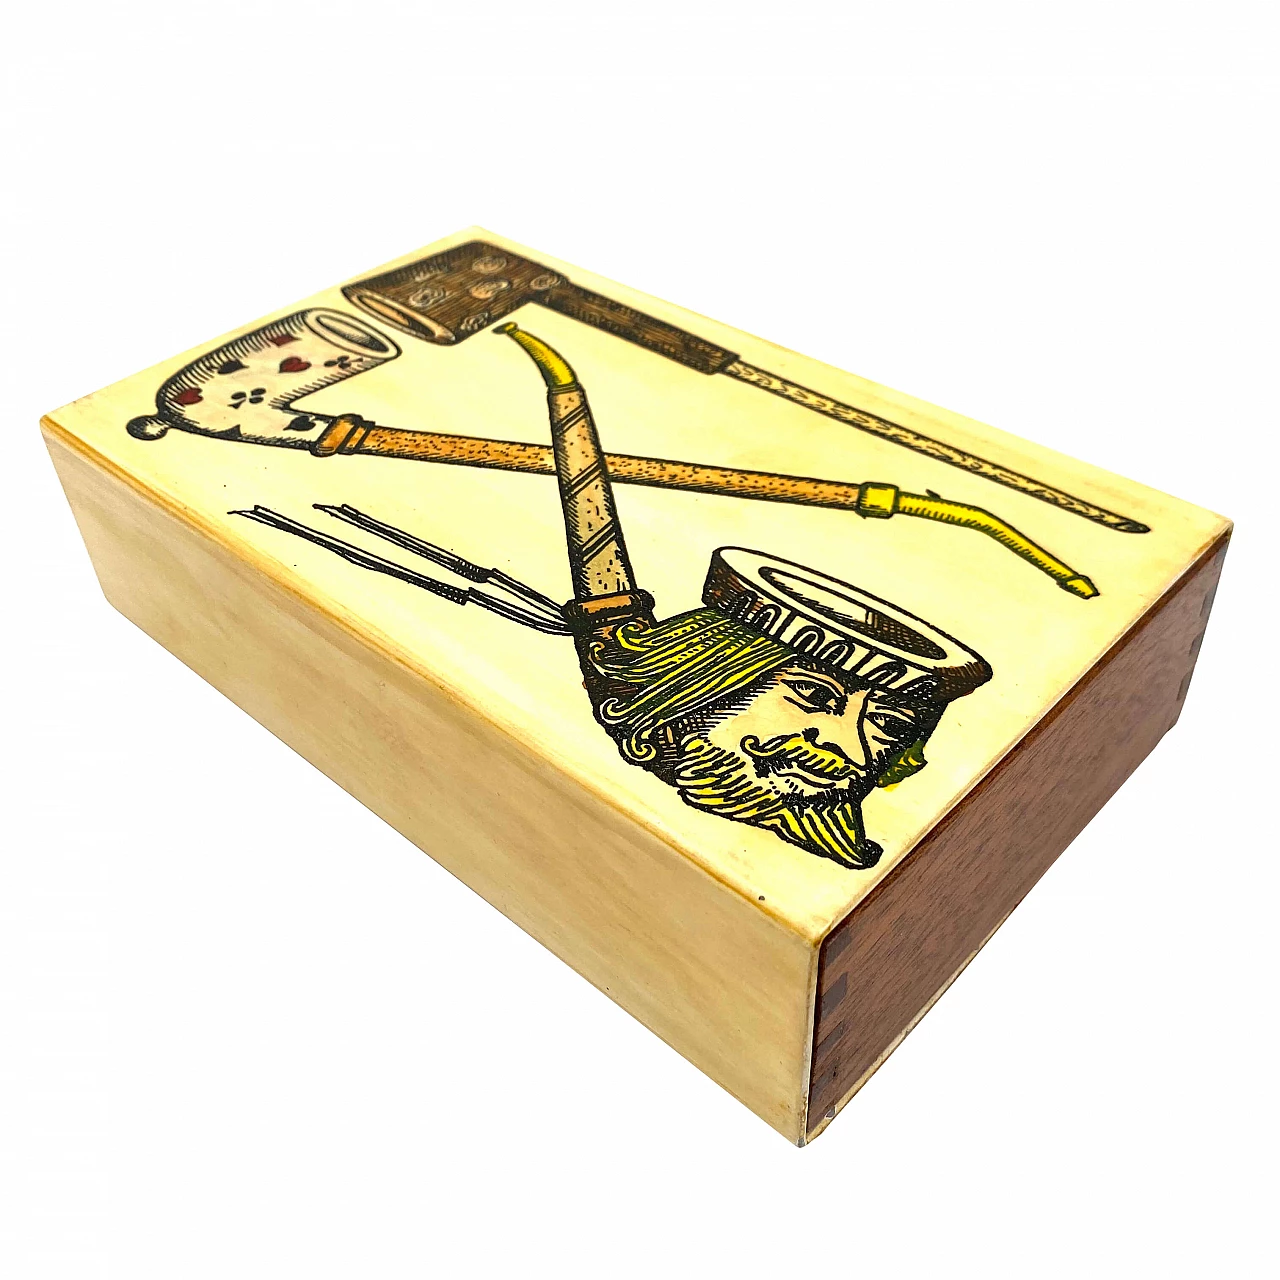 Mahogany Pipes box by Piero Fornasetti, 1950s 1308241